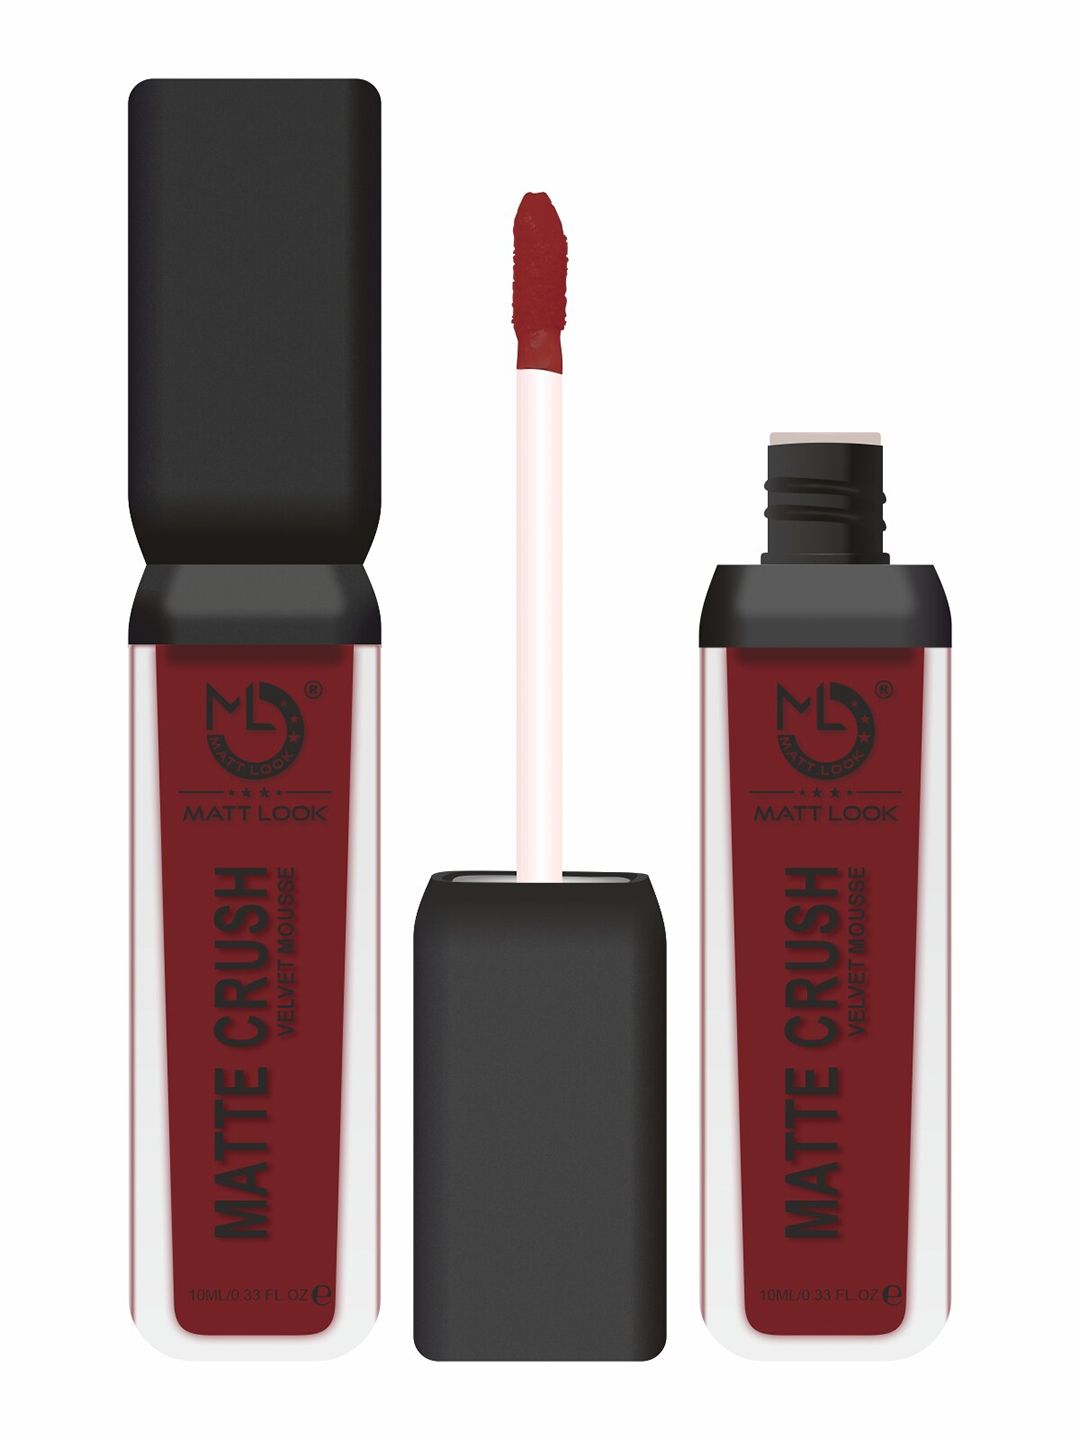 MATTLOOK Matte Crush Velvet Mousse Lipstick - Brazen Raisin 10ml (Pack of 2) Price in India